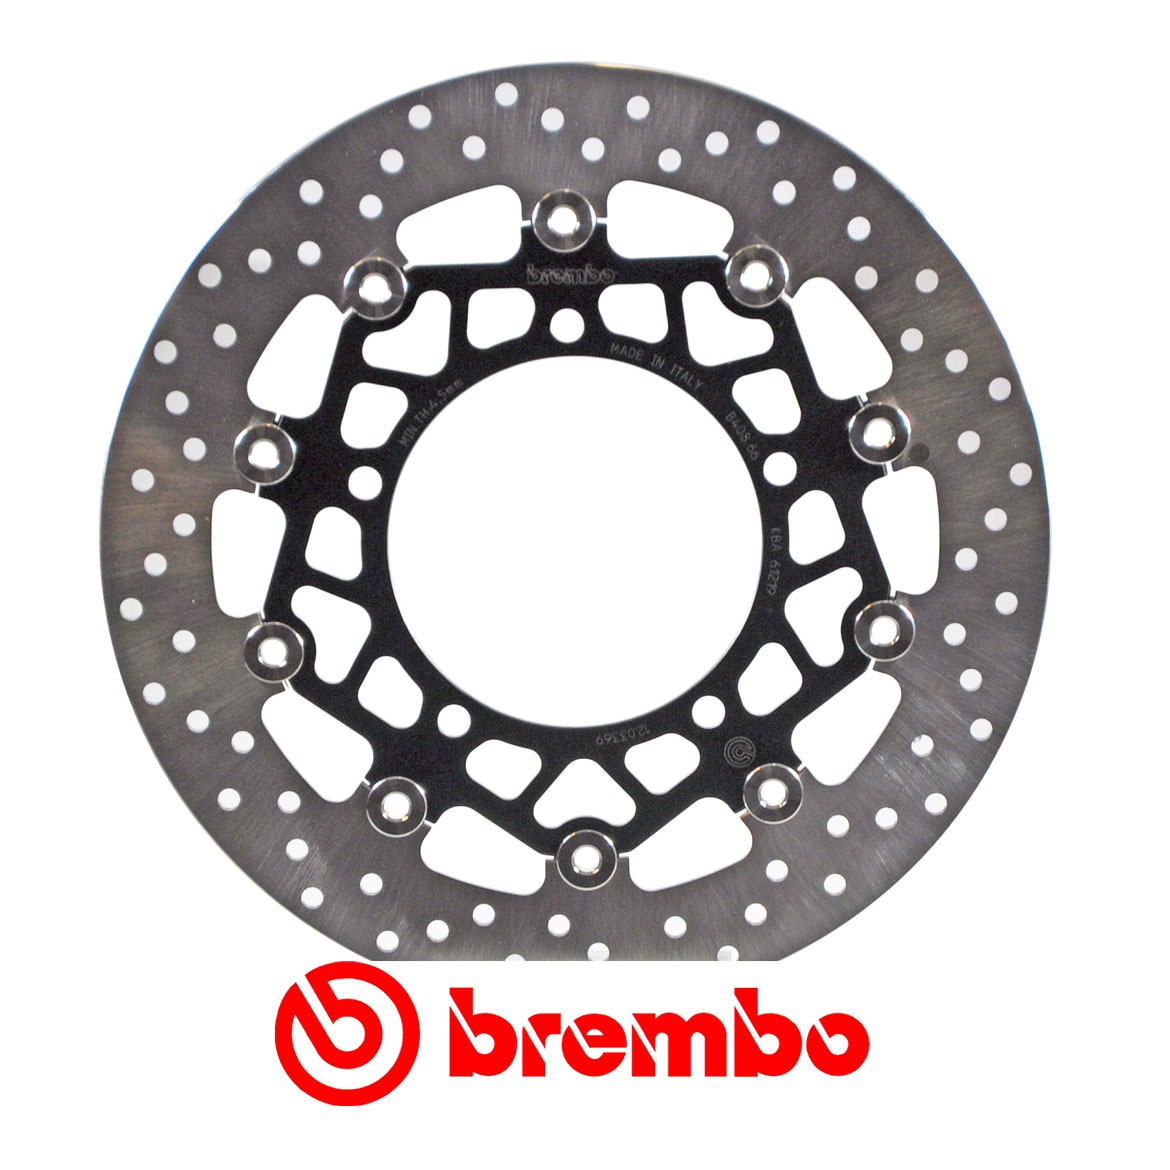 Disque de frein avant Brembo pour 600 GSR (06-10)